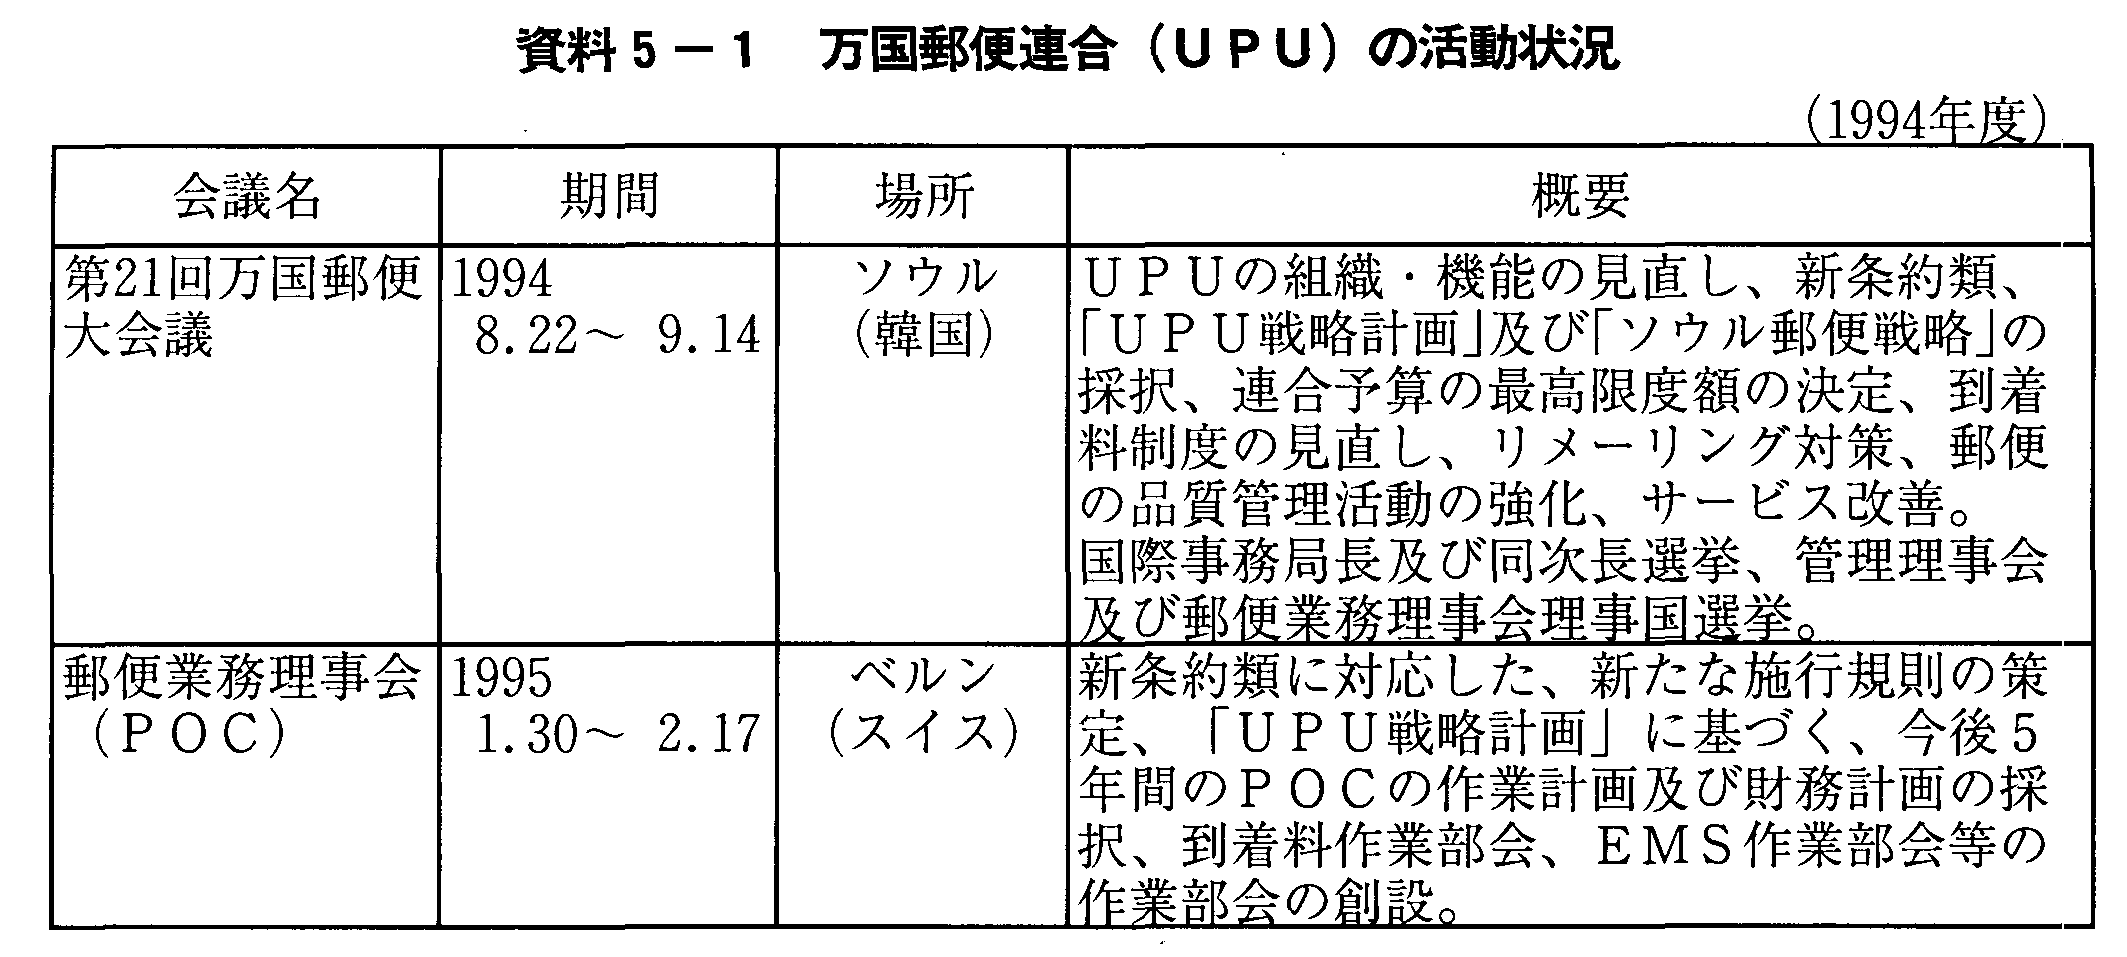 資料5-1 万国郵便連合(UPU)の活動状況(1994年度)